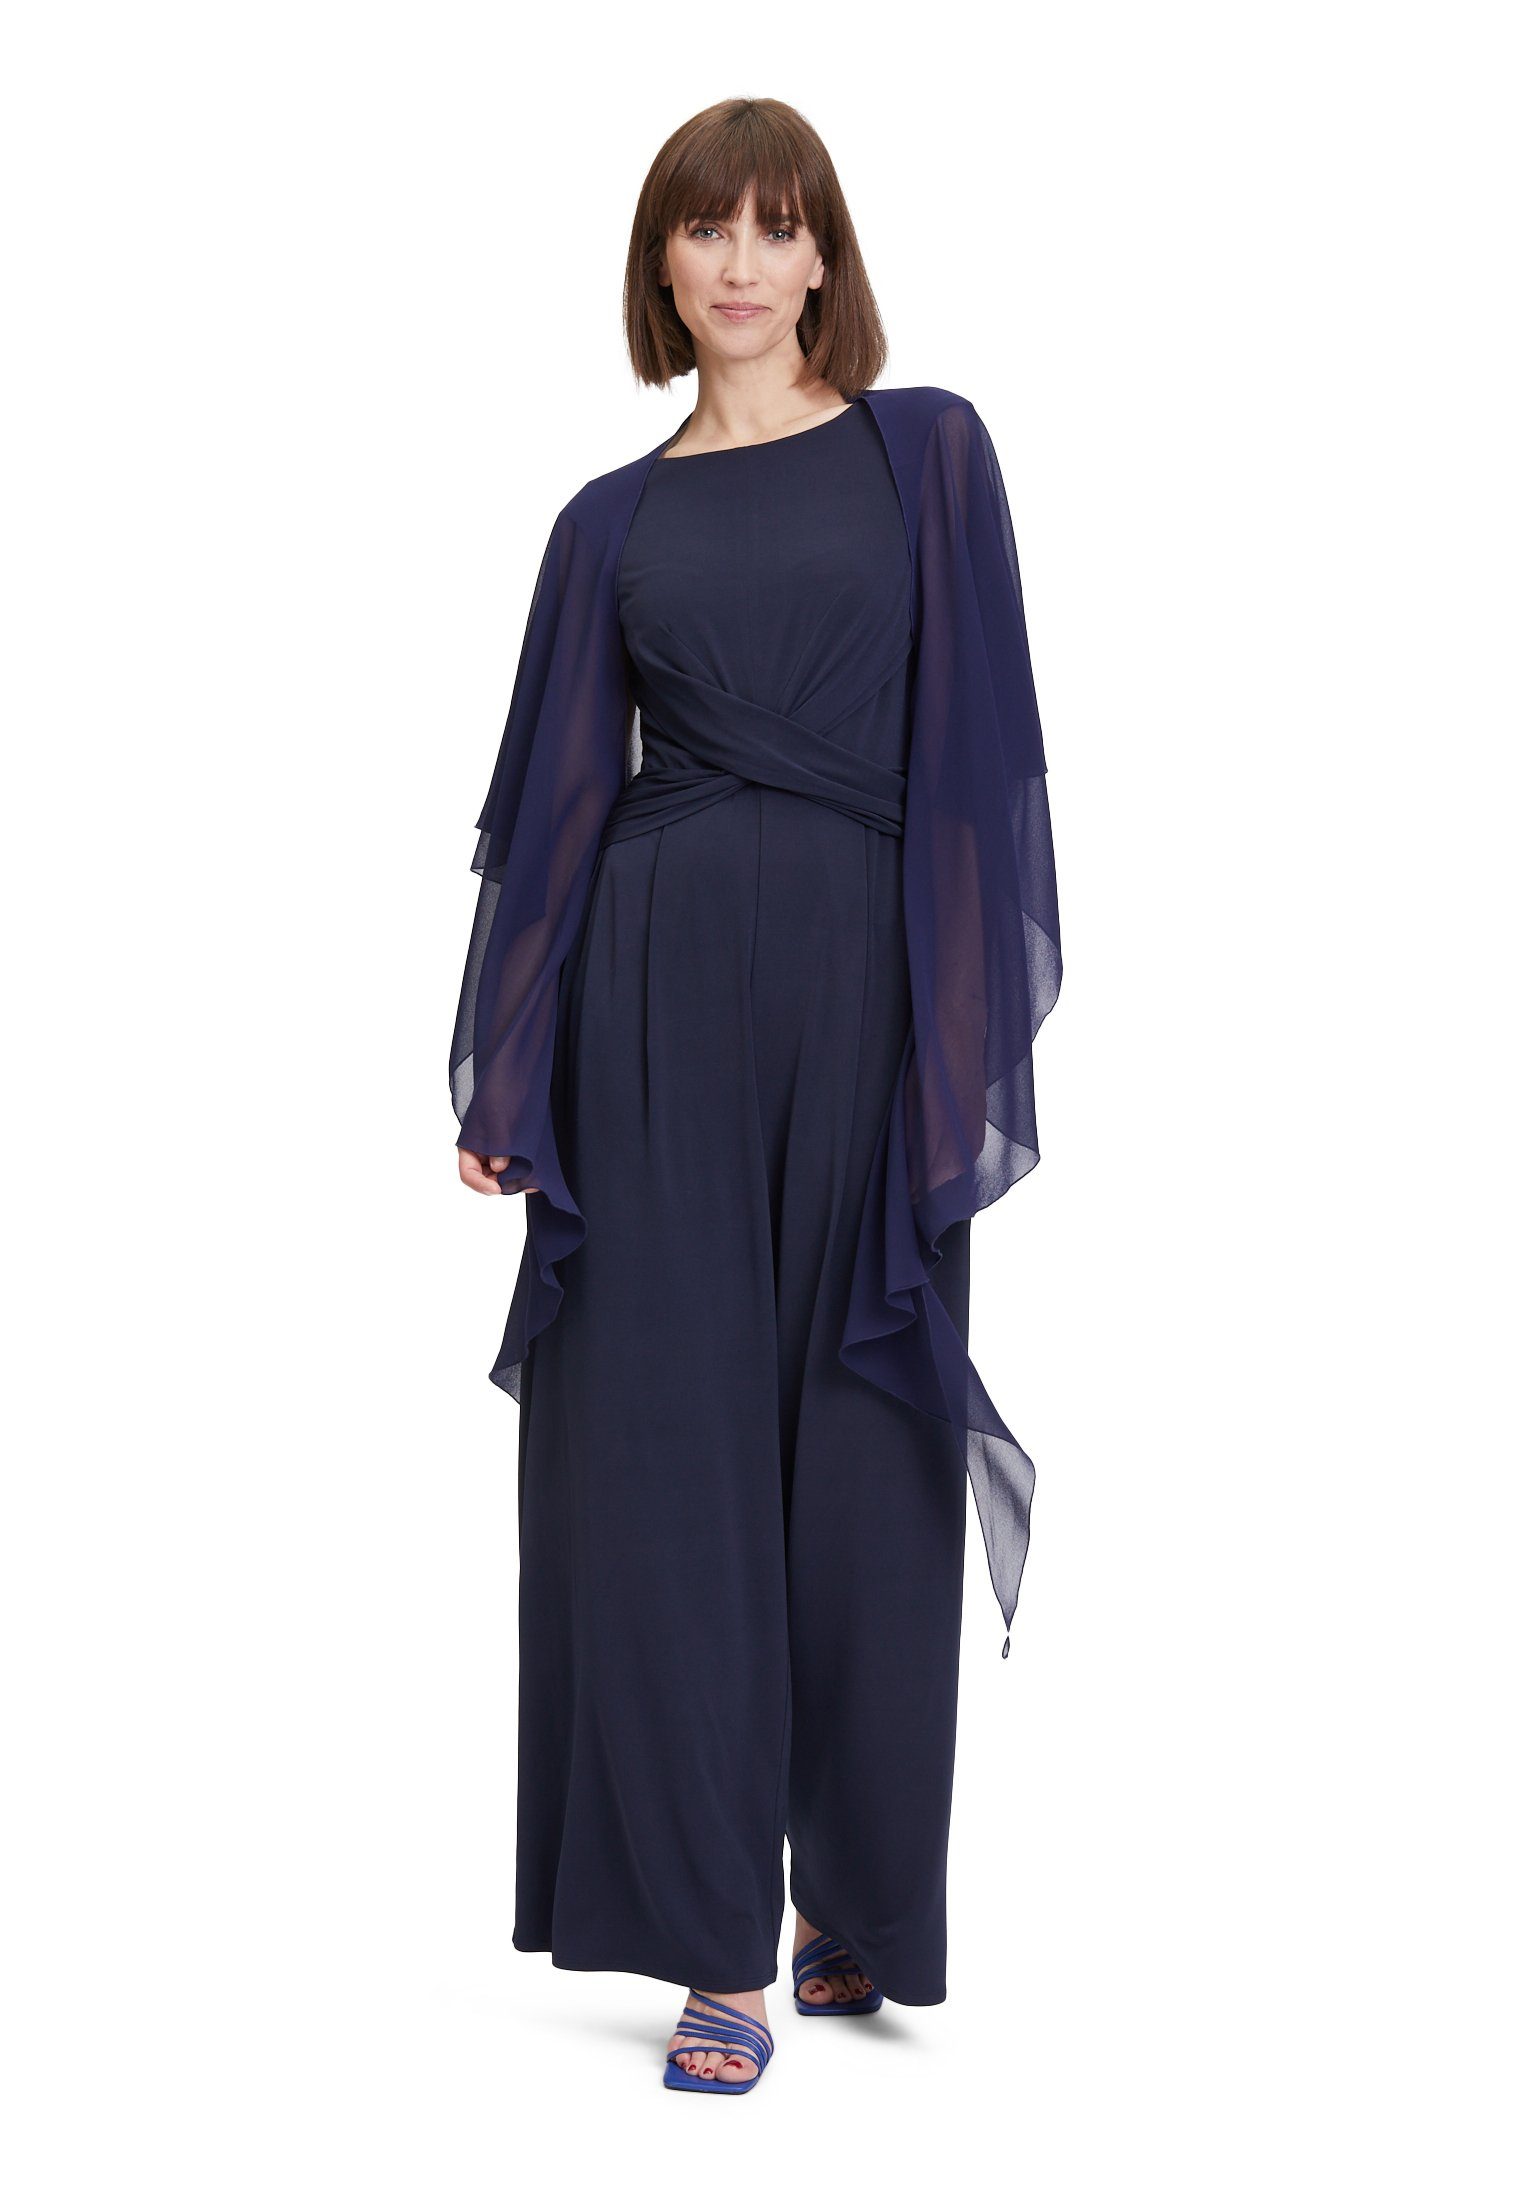 Vera Mont Modeschal mit Knöpfen, Material dunkelblau